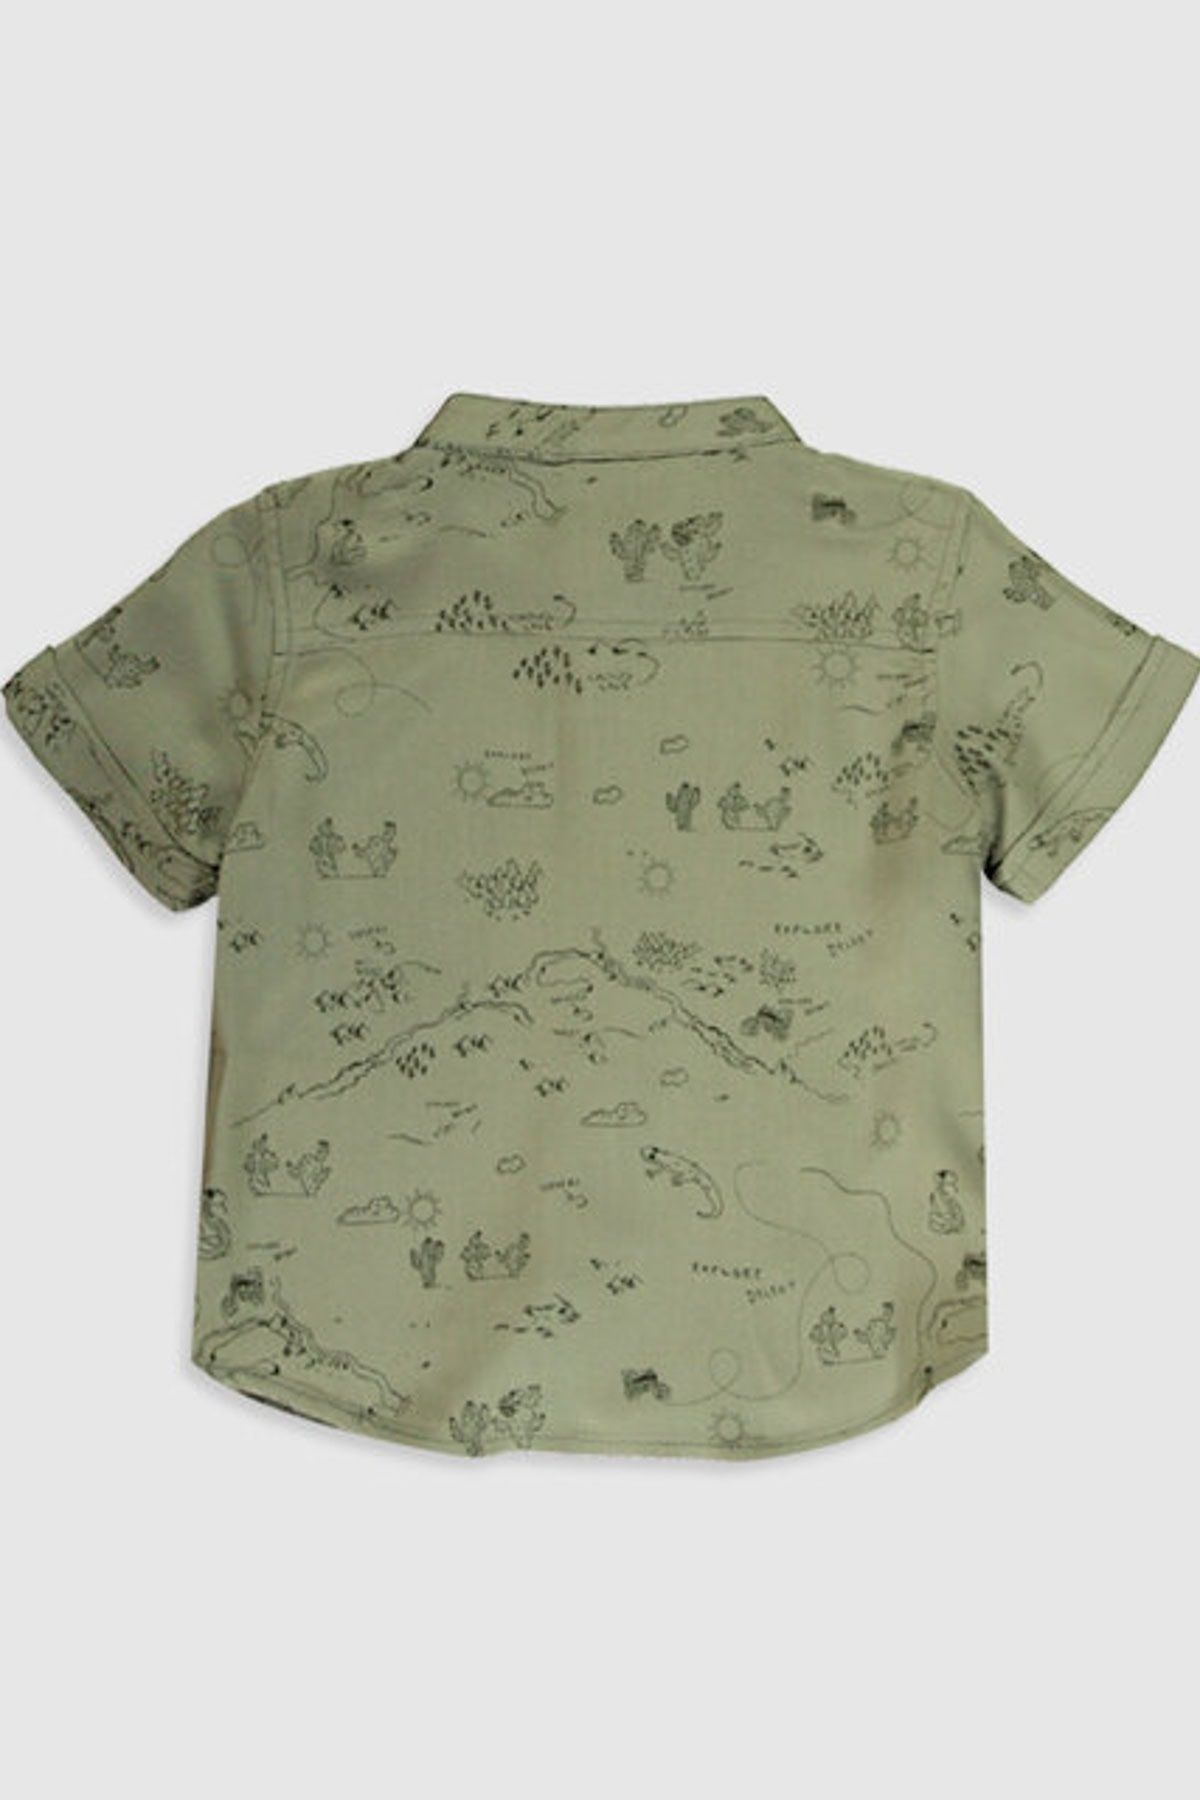 Рубашка для мальчика 9-12 месяцев,  ТУРЦИЯ LC WAIKIKI,  детская одежда